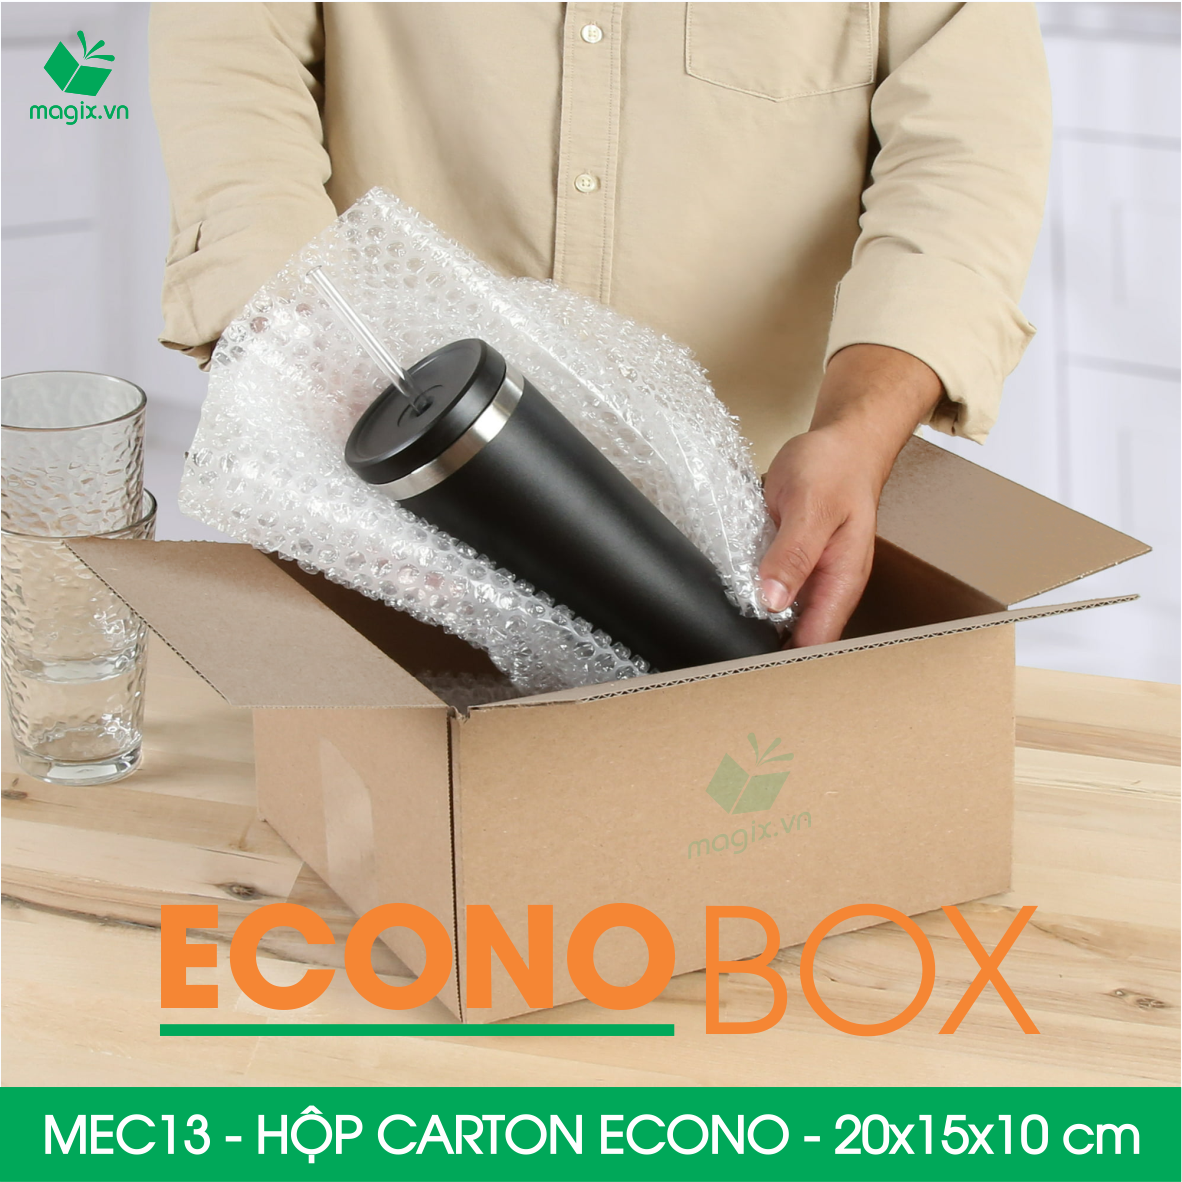 MEC13 - 20x15x10 cm - Combo 100 thùng hộp carton trơn siêu tiết kiệm ECONO